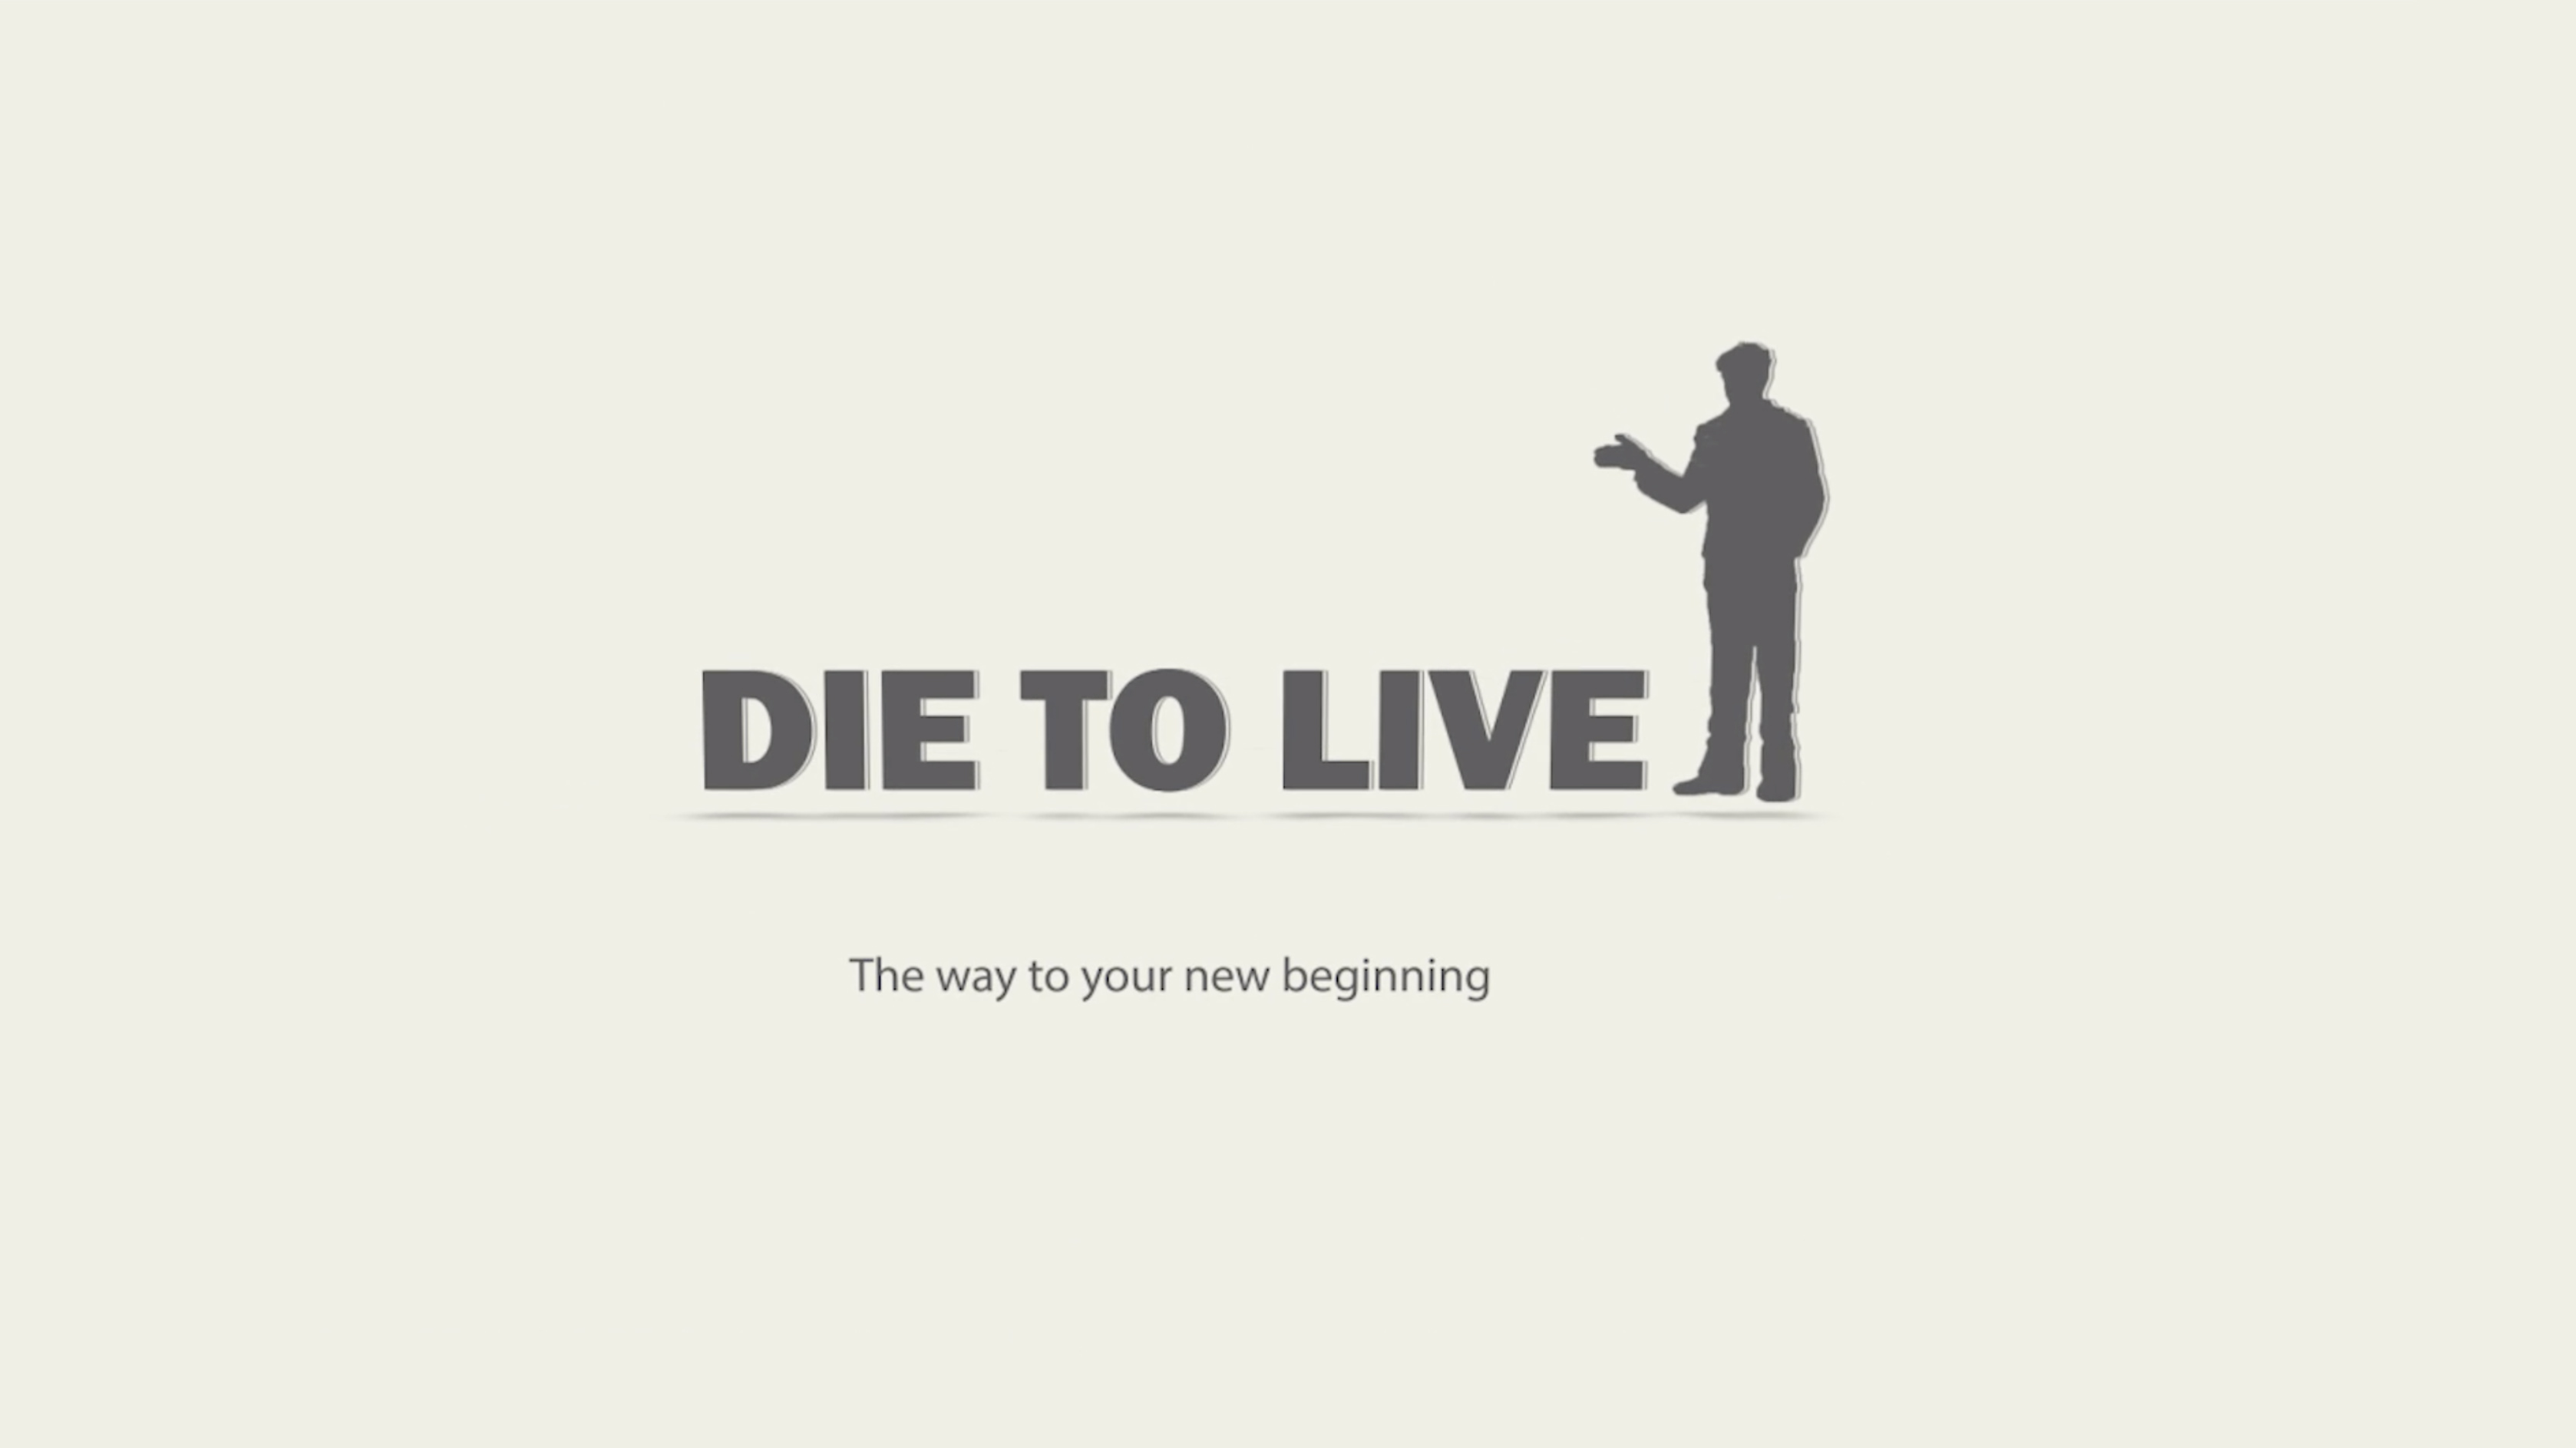 Die to Live